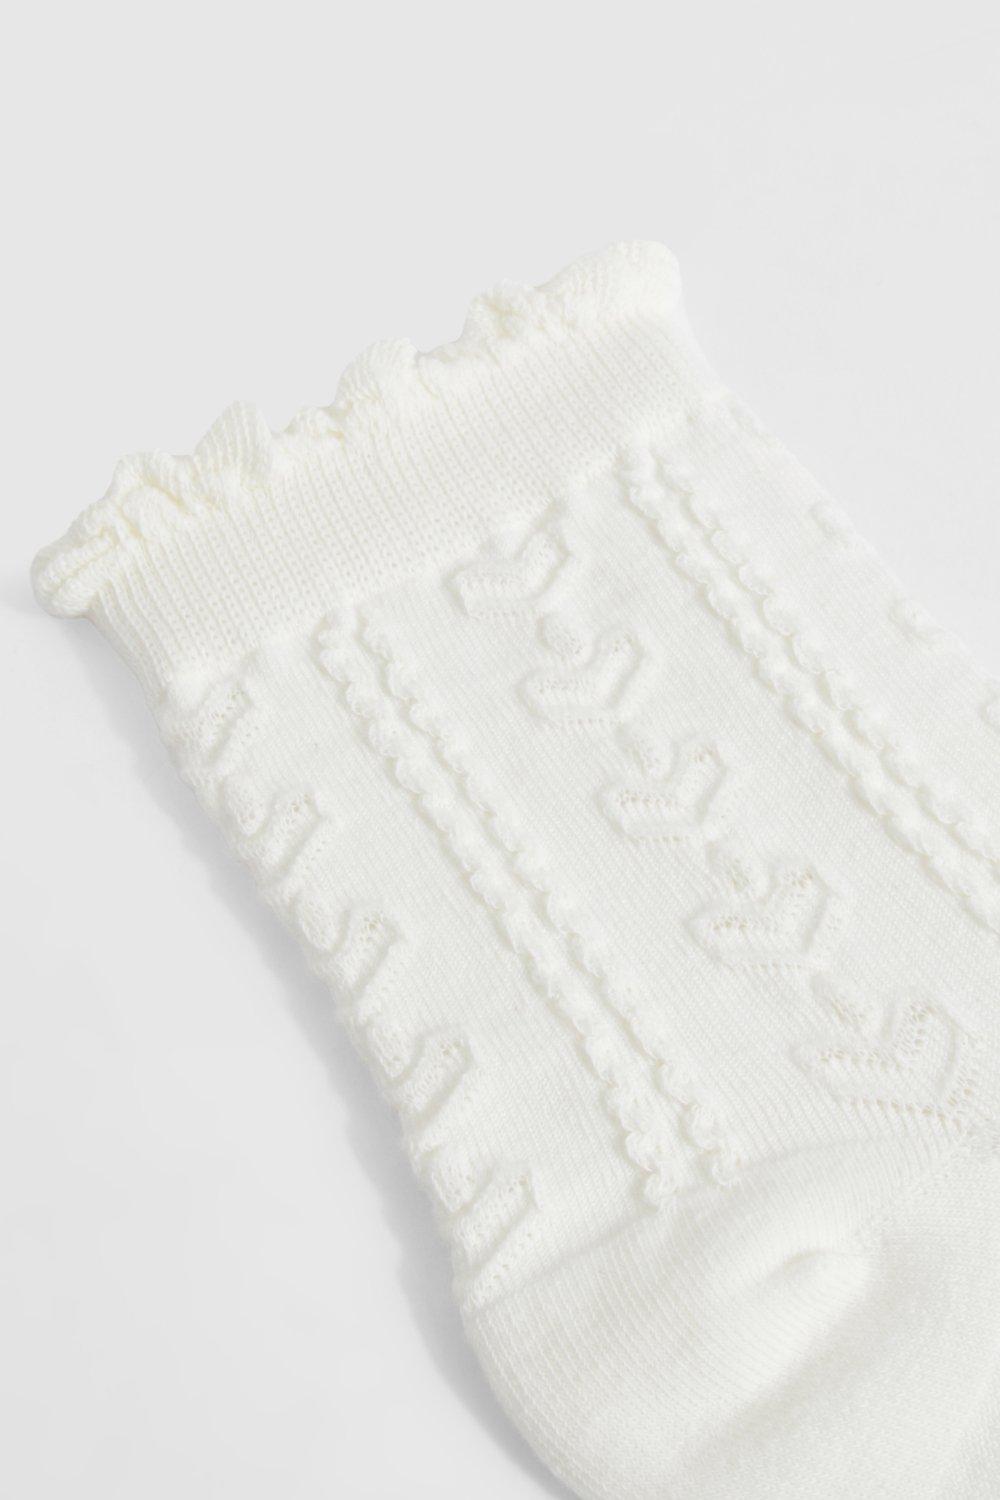 White Openwork Short Girl Socks